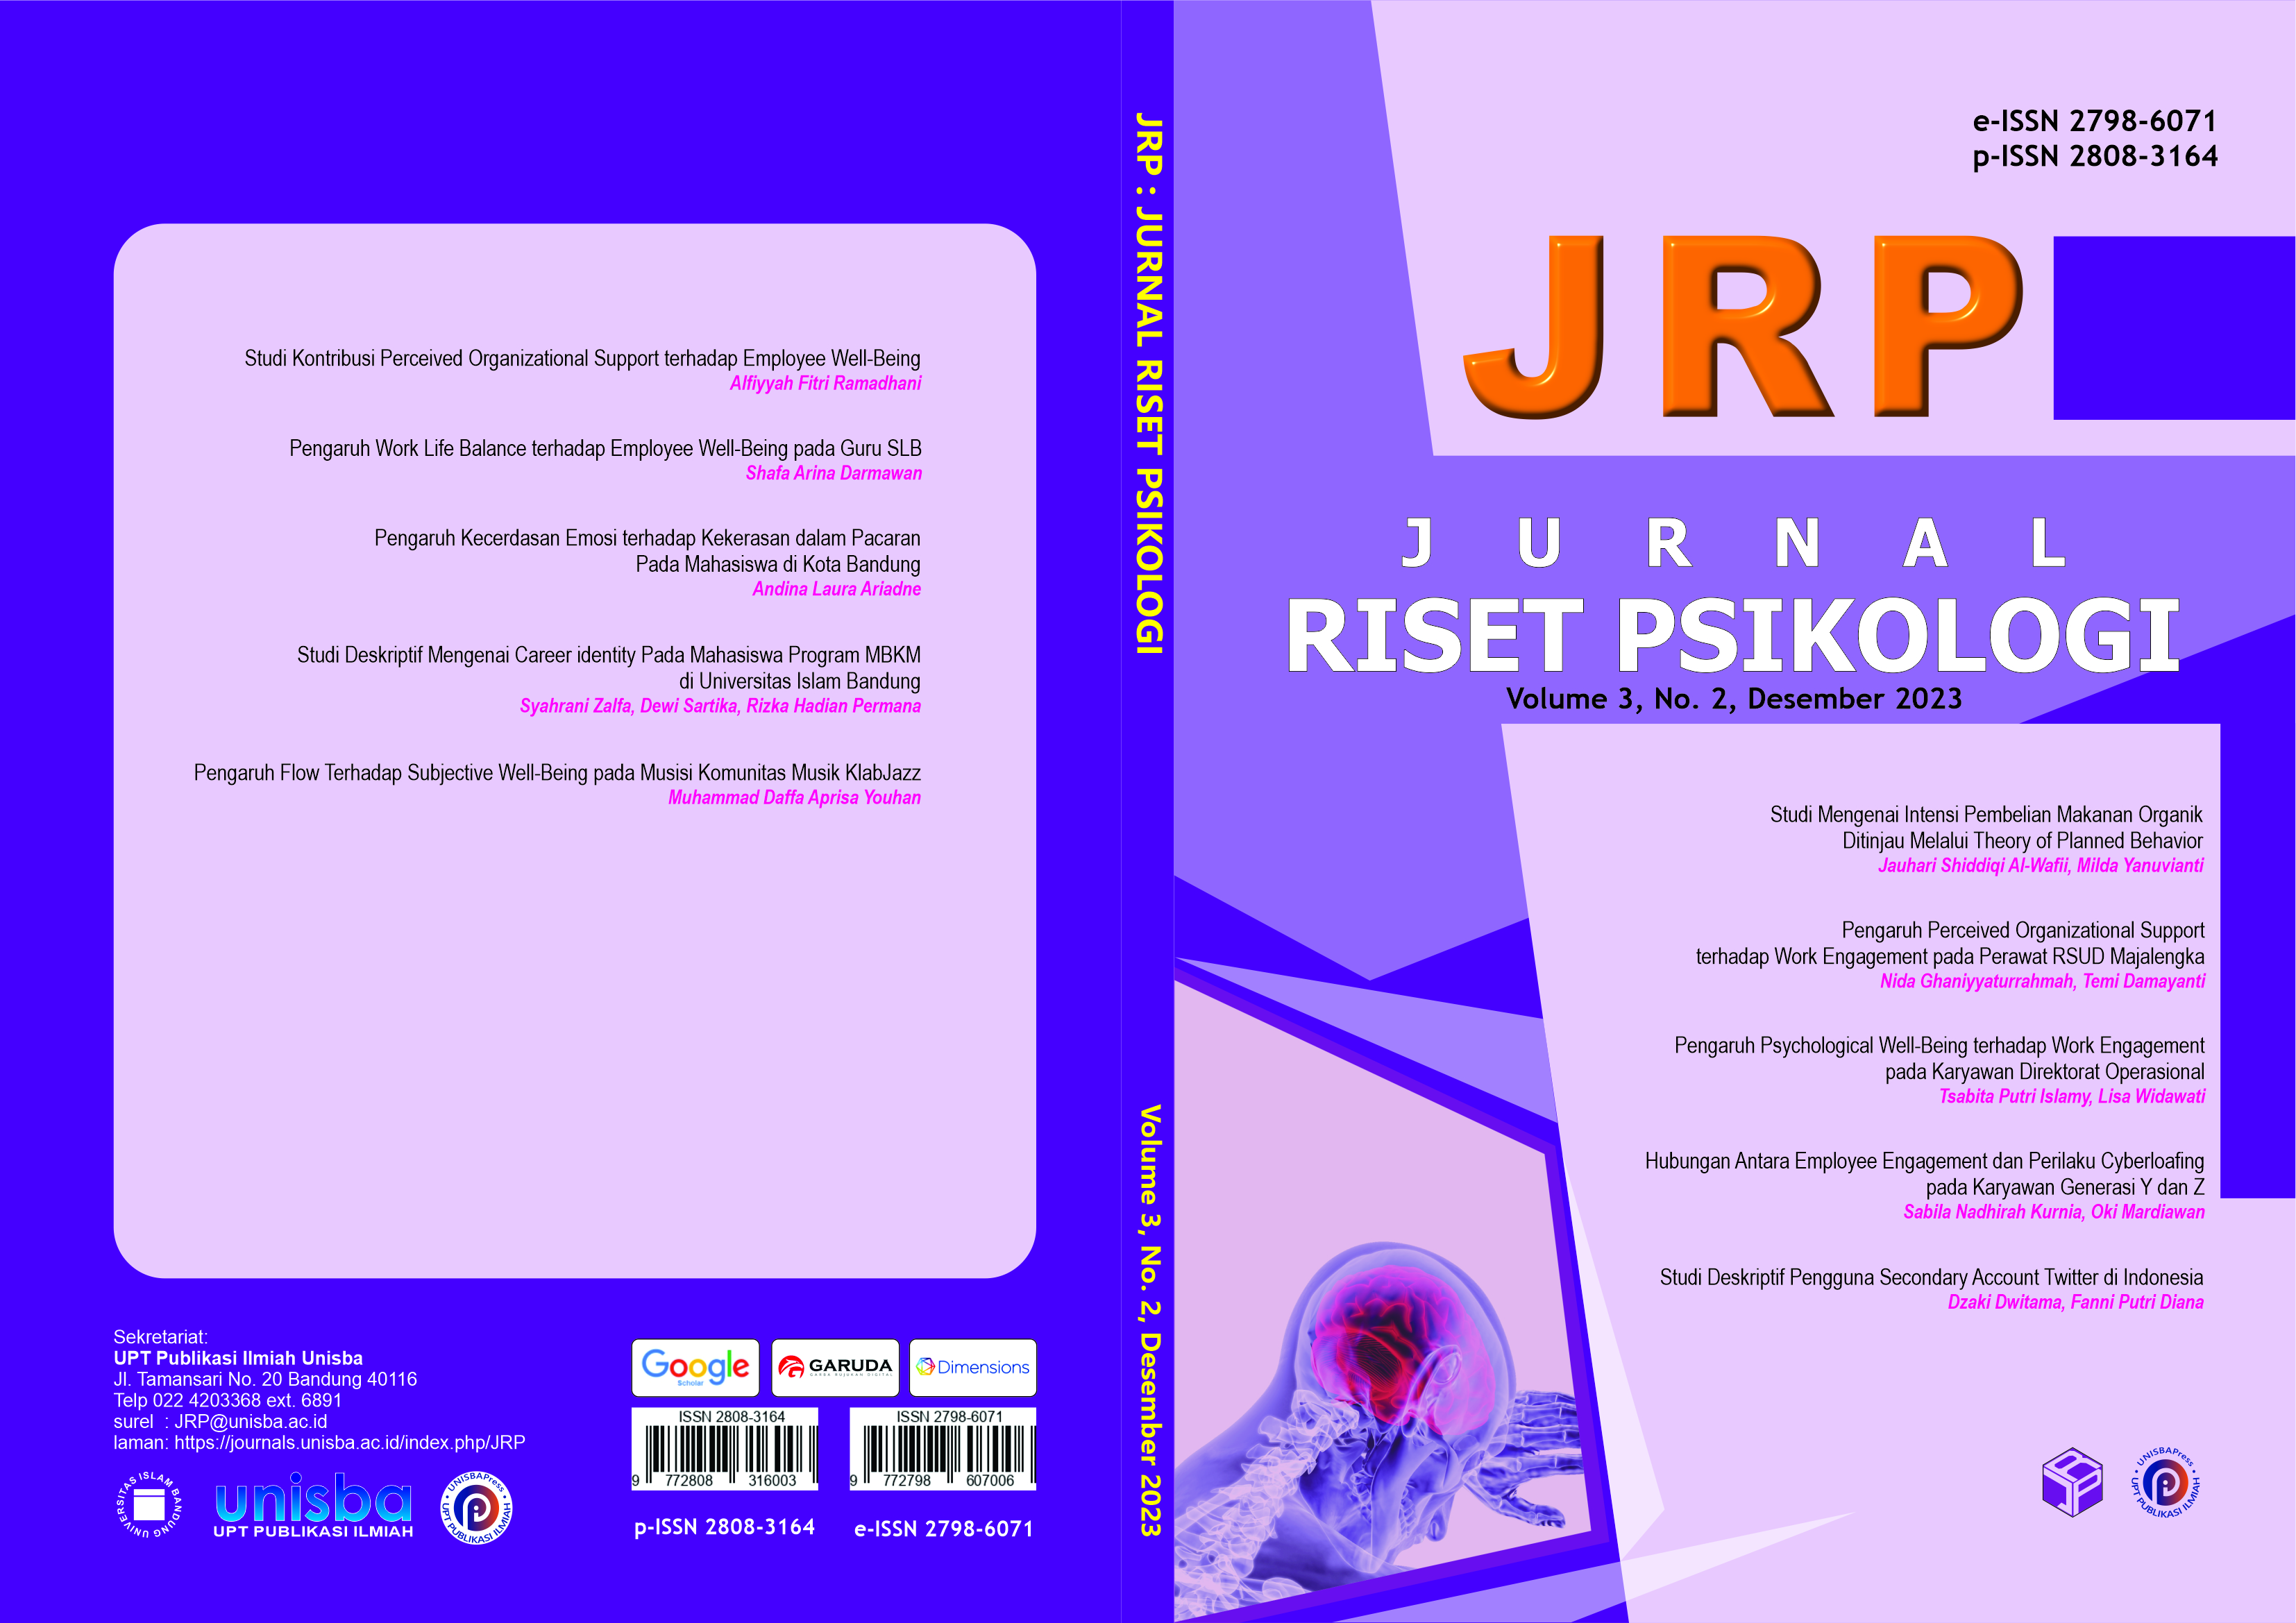 					View Volume 3, No. 2, Desember 2023, Jurnal Riset Psikologi (JRP)
				